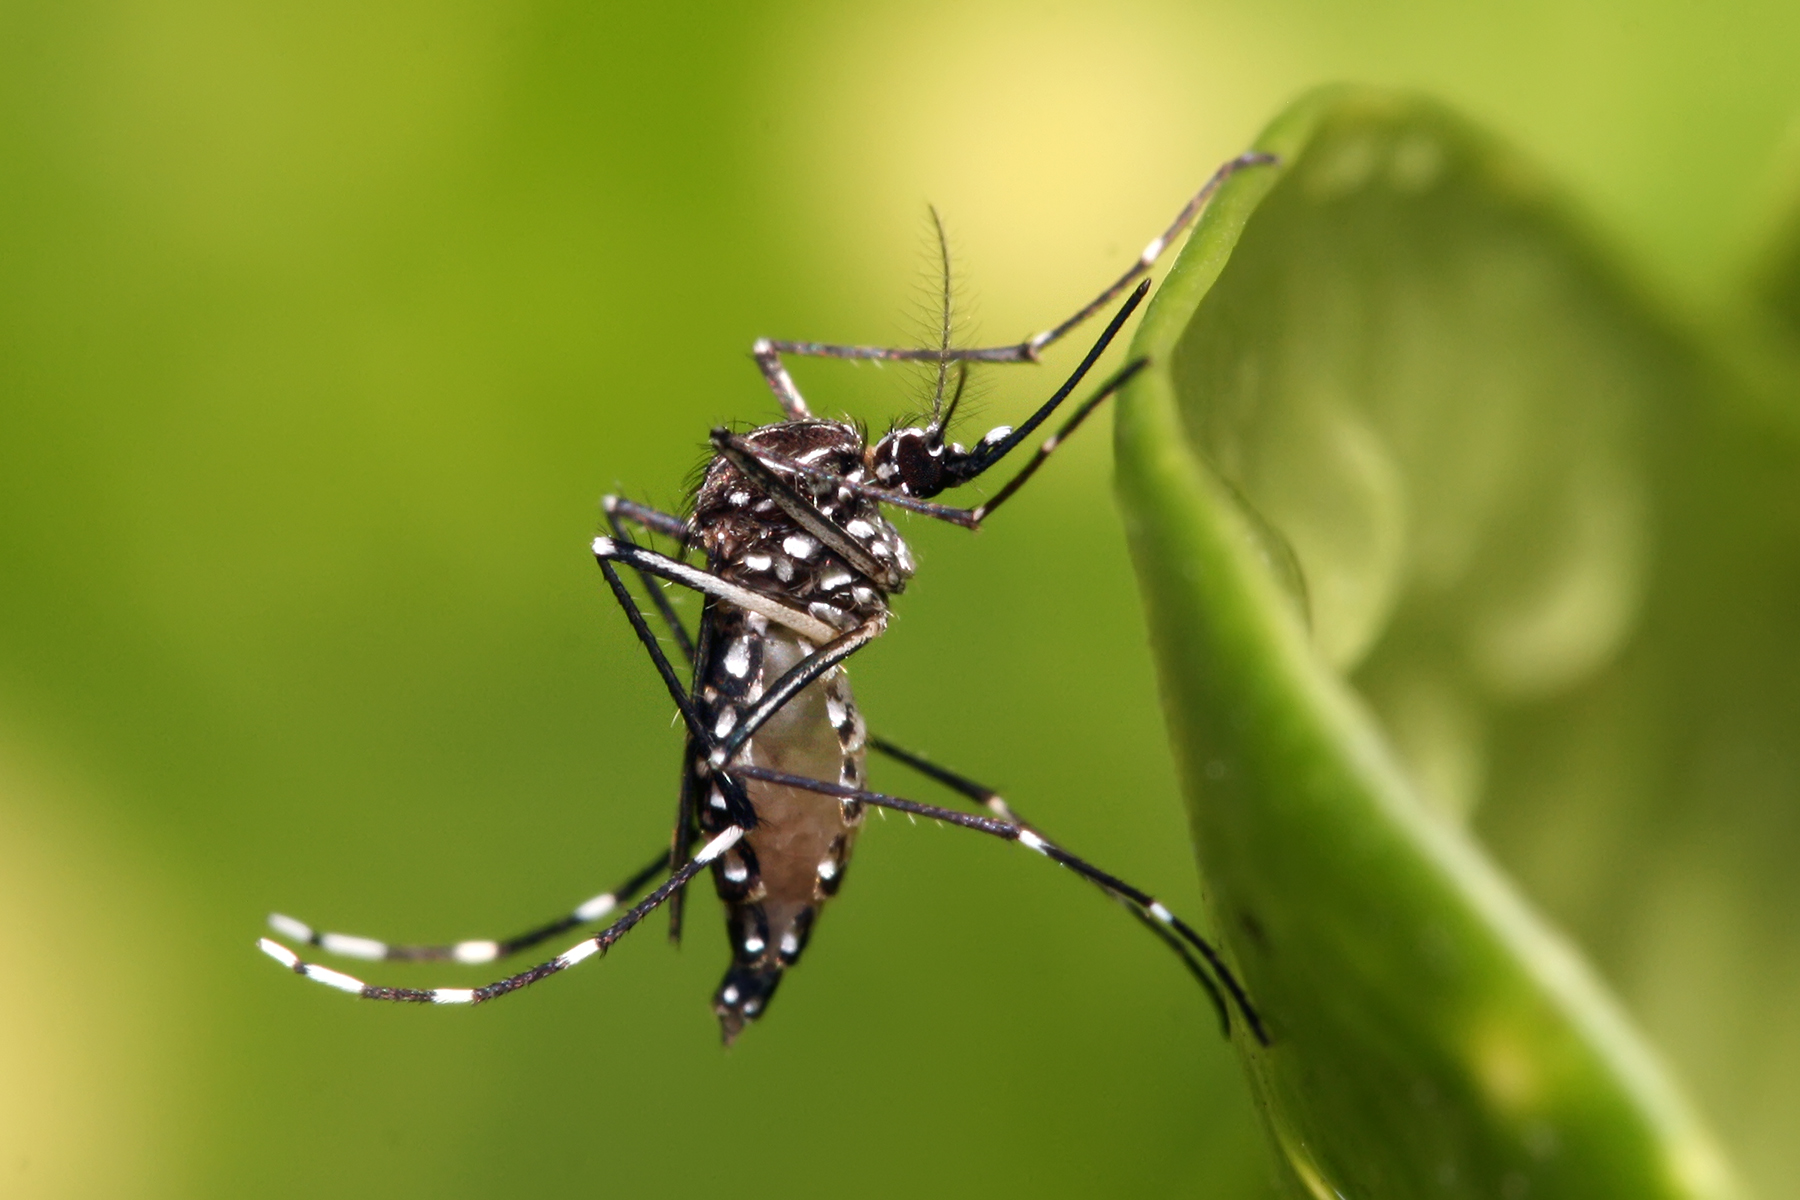 Комар желтолихорадочный или Aedes aegypti является переносчиком опасных вирусных заболеваний. Популяцию этого вида стараются истребить с помощью биотехнологий.